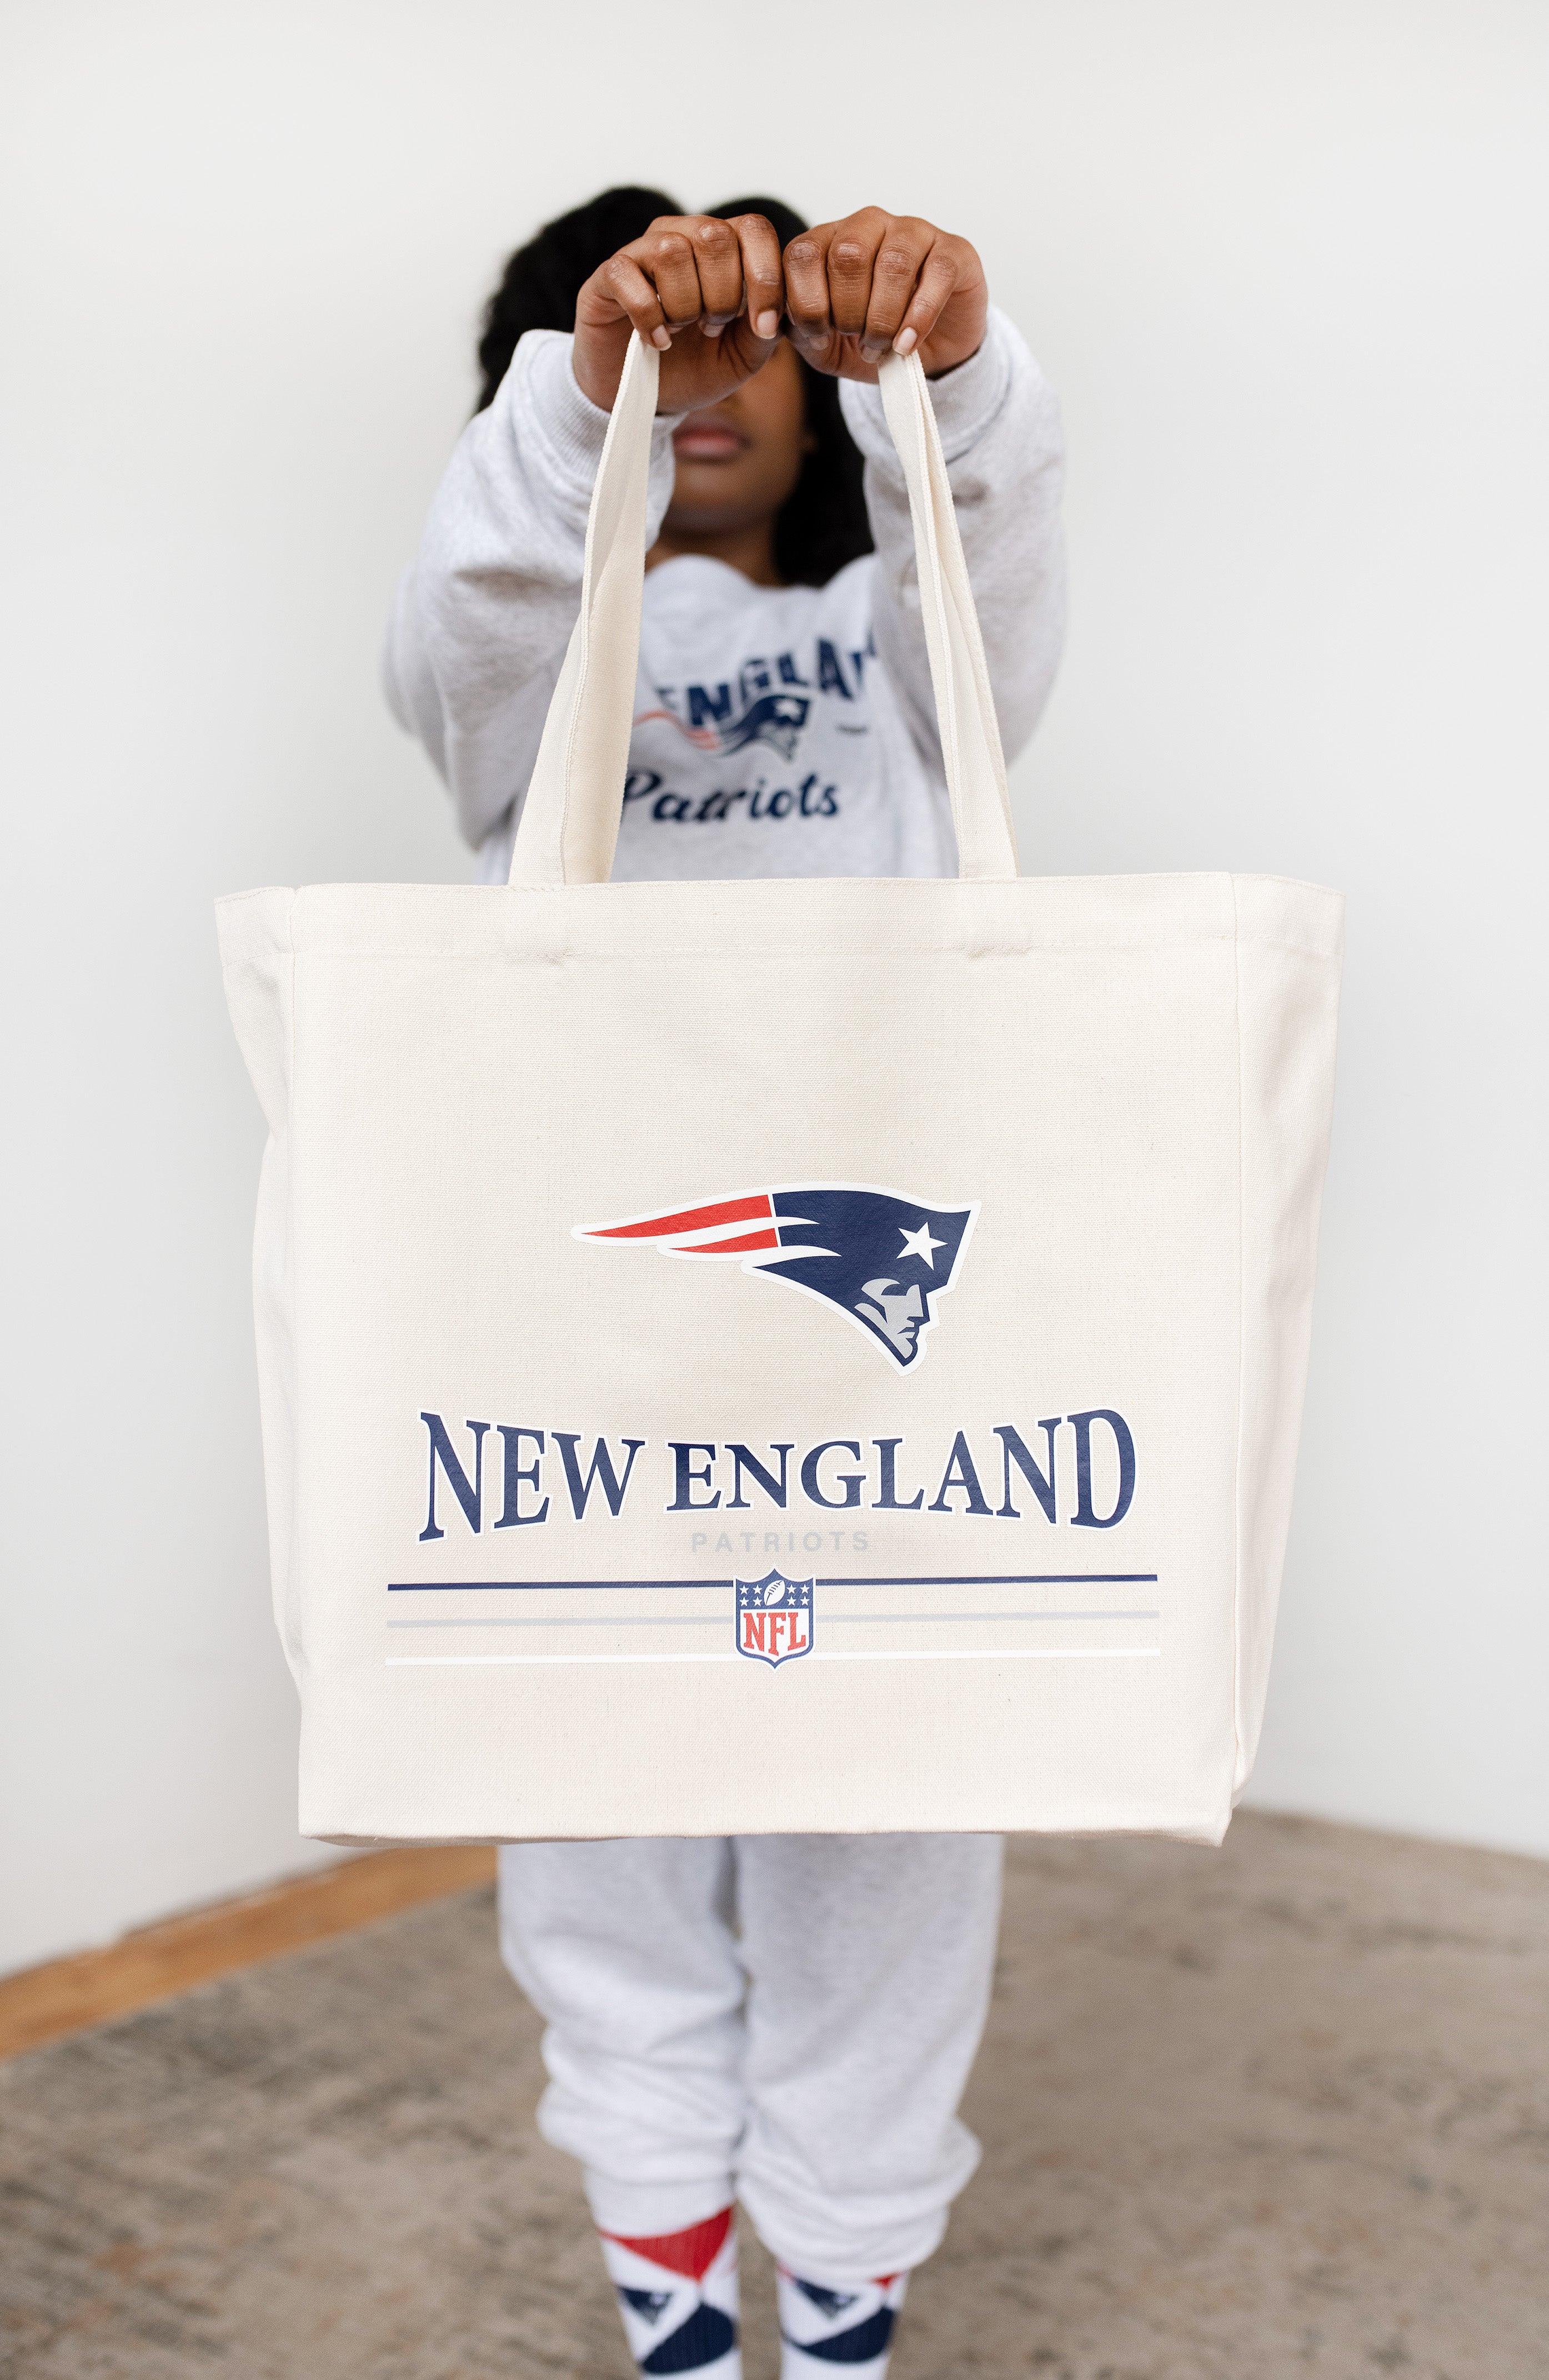 New England Patriots NFL Canvas Tote Bag